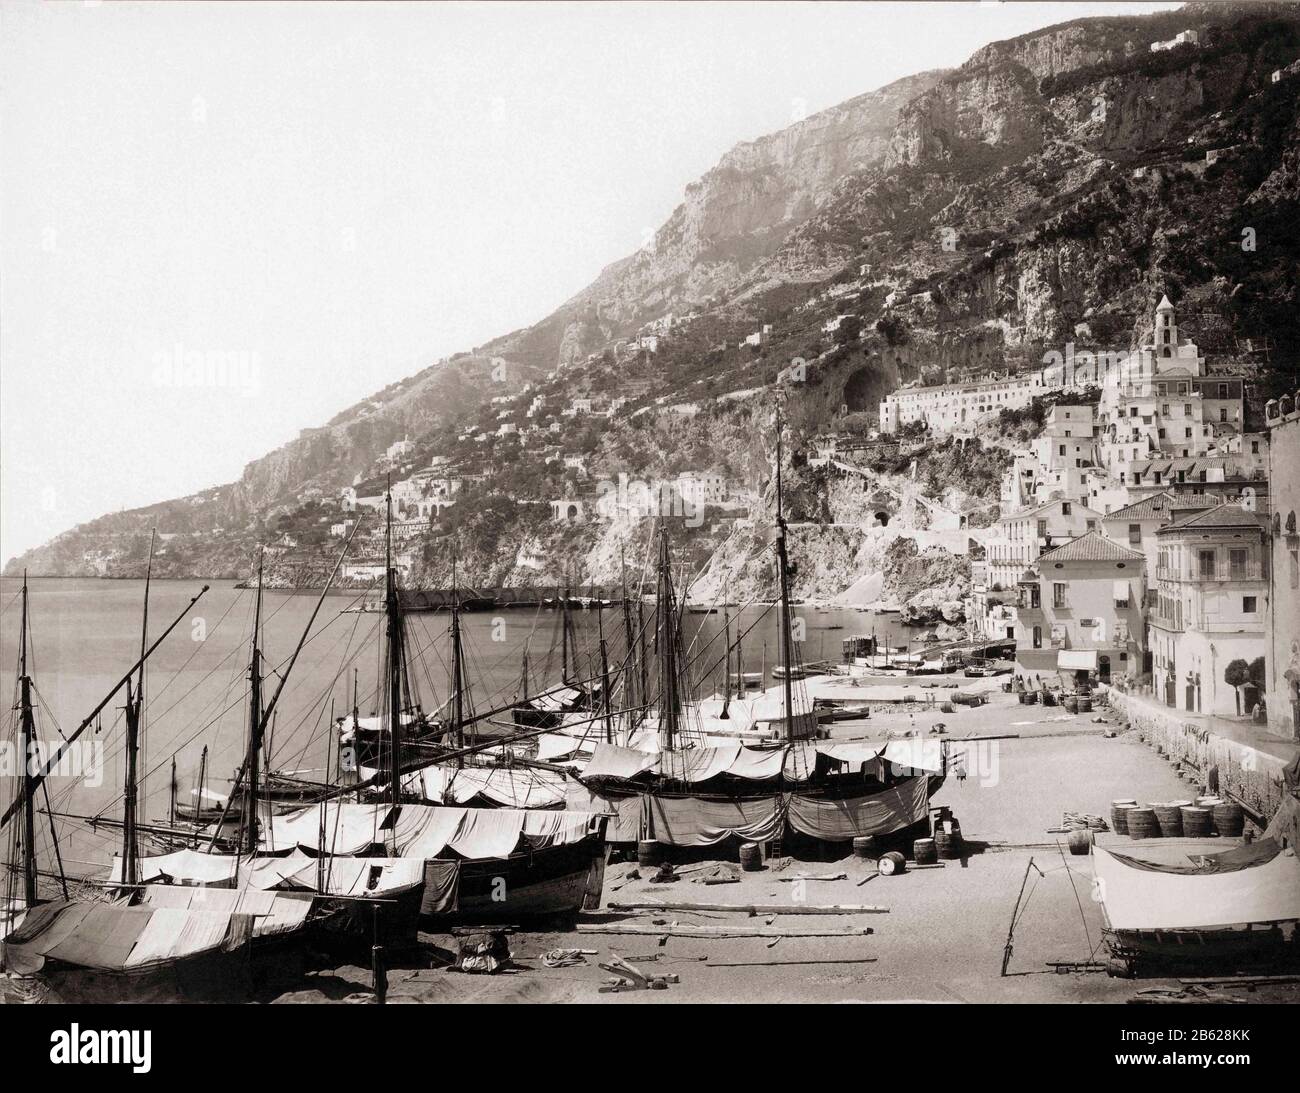 Porto di Amalfi alla fine del 19th secolo. Dopo un lavoro del fotografo tedesco Giorgio Sommer, 1834-1914 Foto Stock